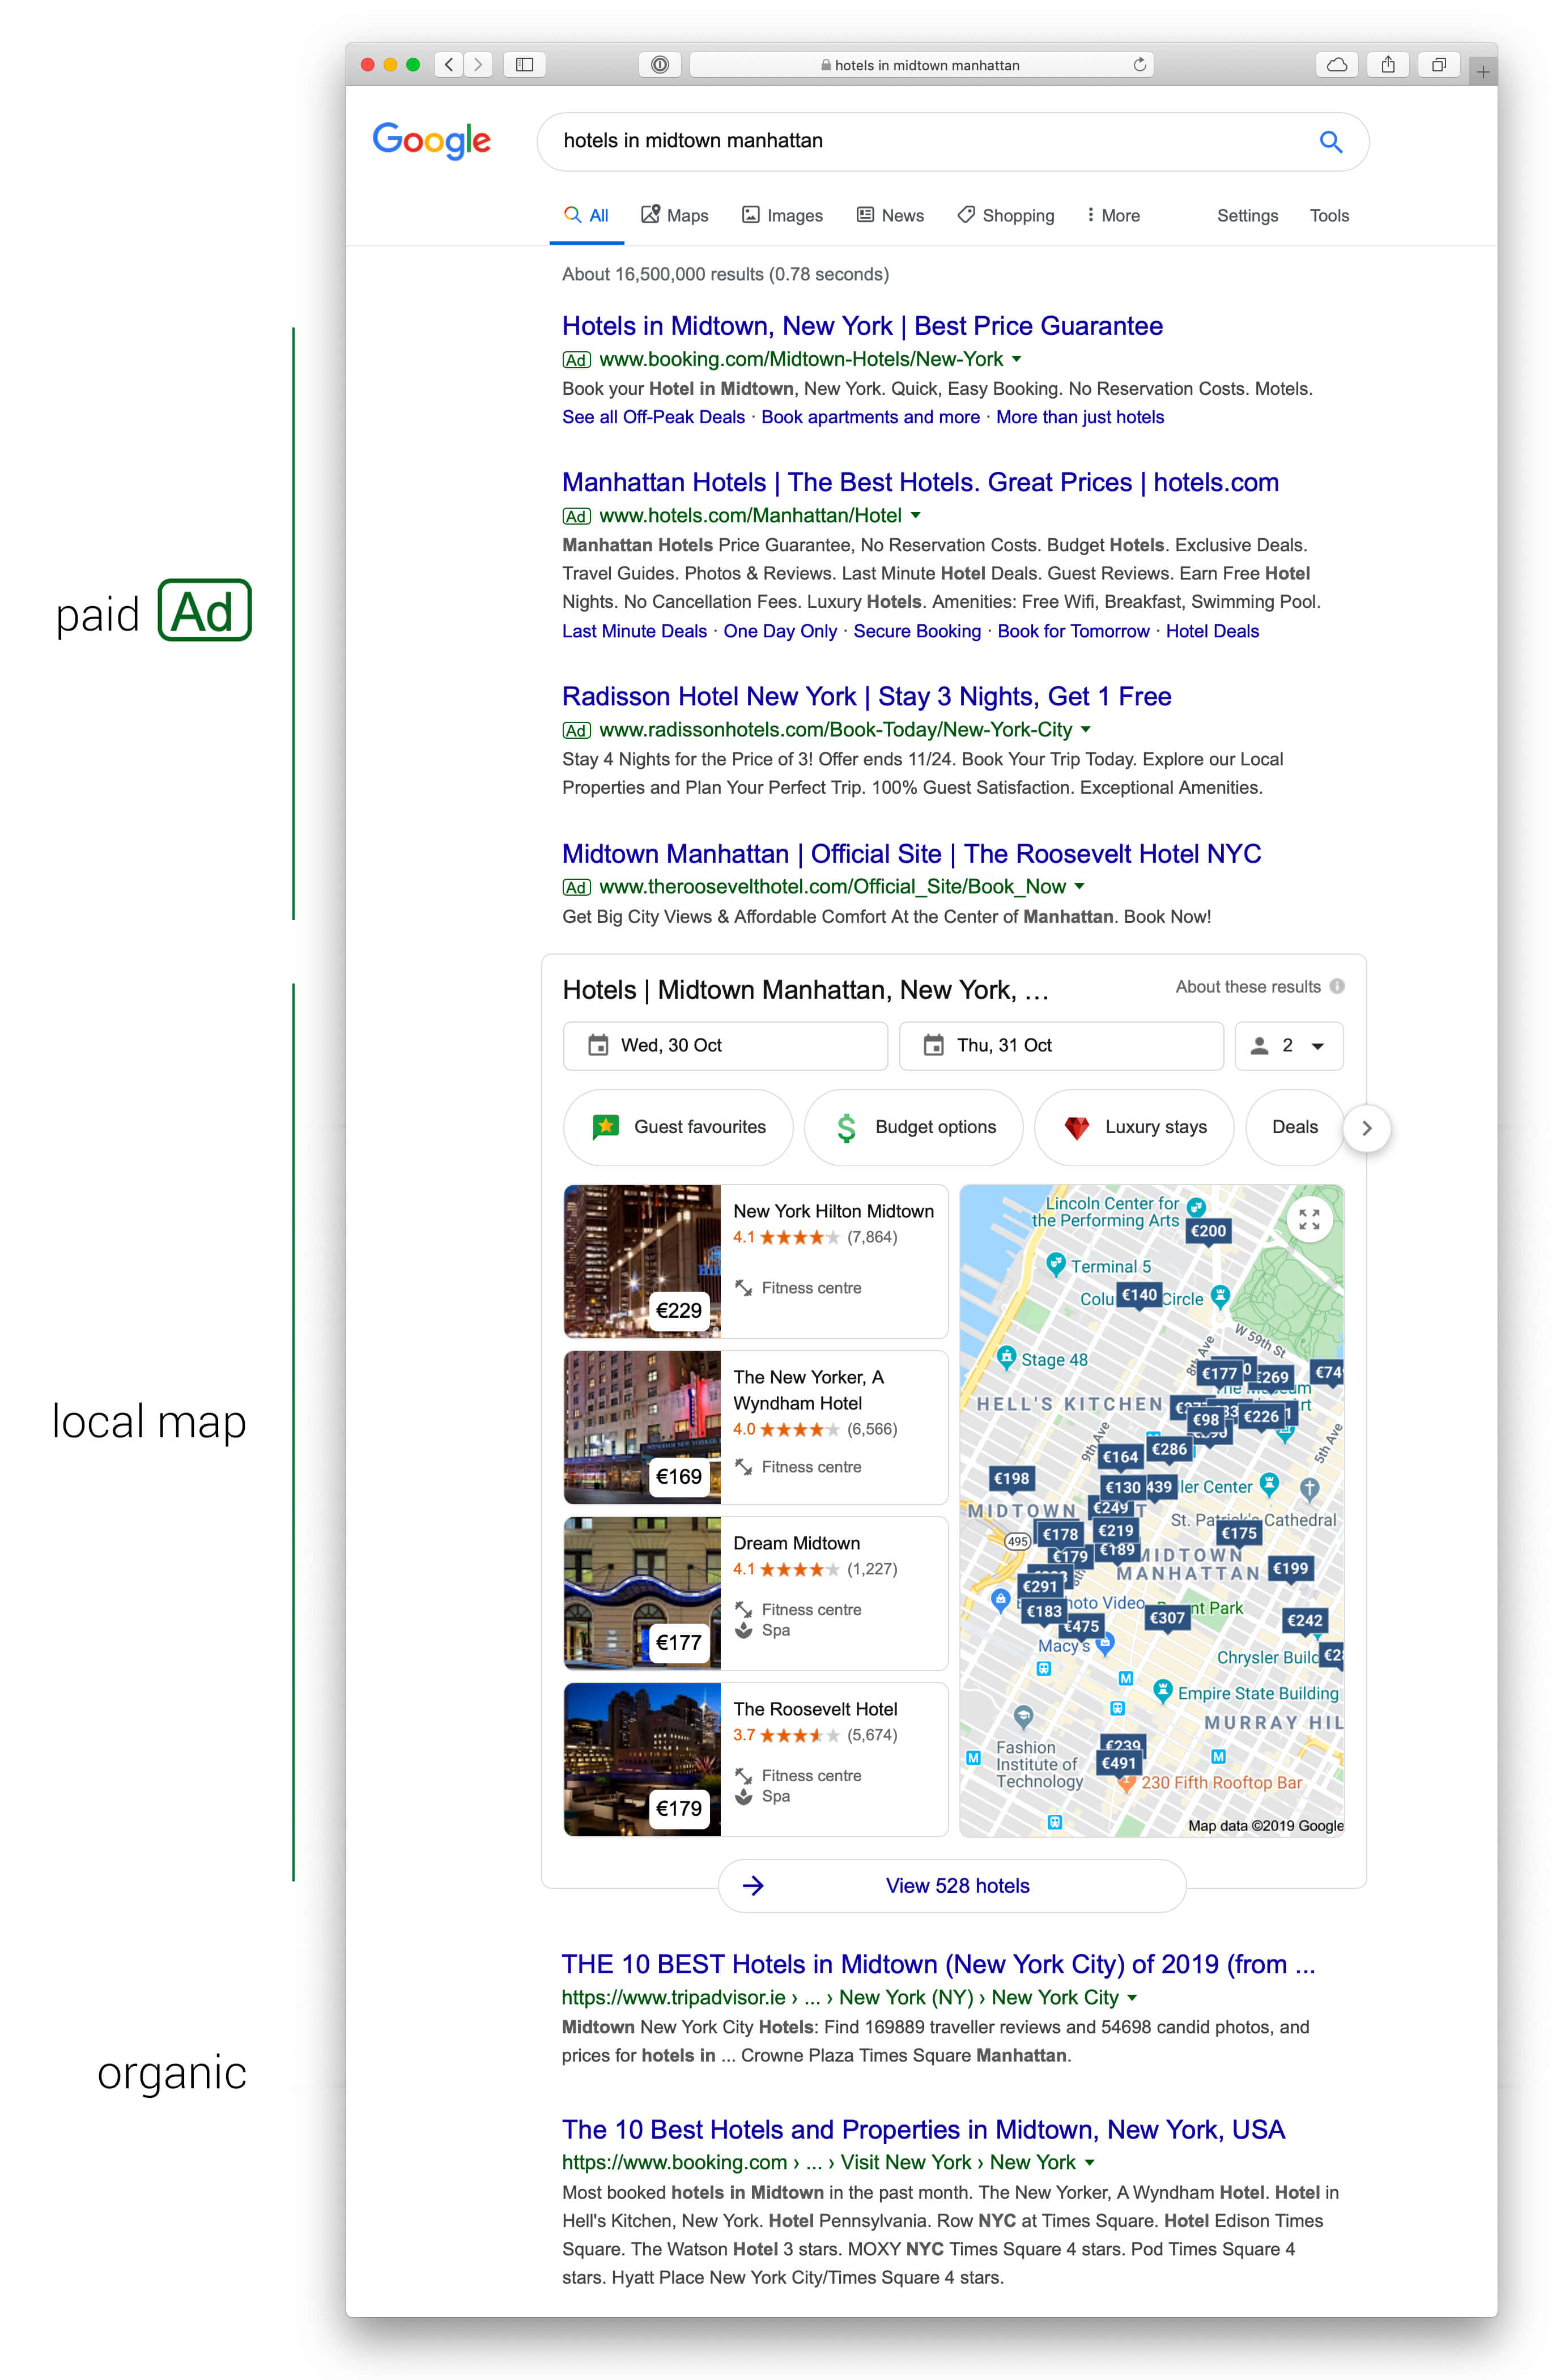 Búsqueda de hoteles en el centro de Manhattan que muestra resultados pagados en los cuatro primeros puestos, y después los resultados en el mapa. Los resultados de búsqueda orgánica aparecen más abajo en la página.